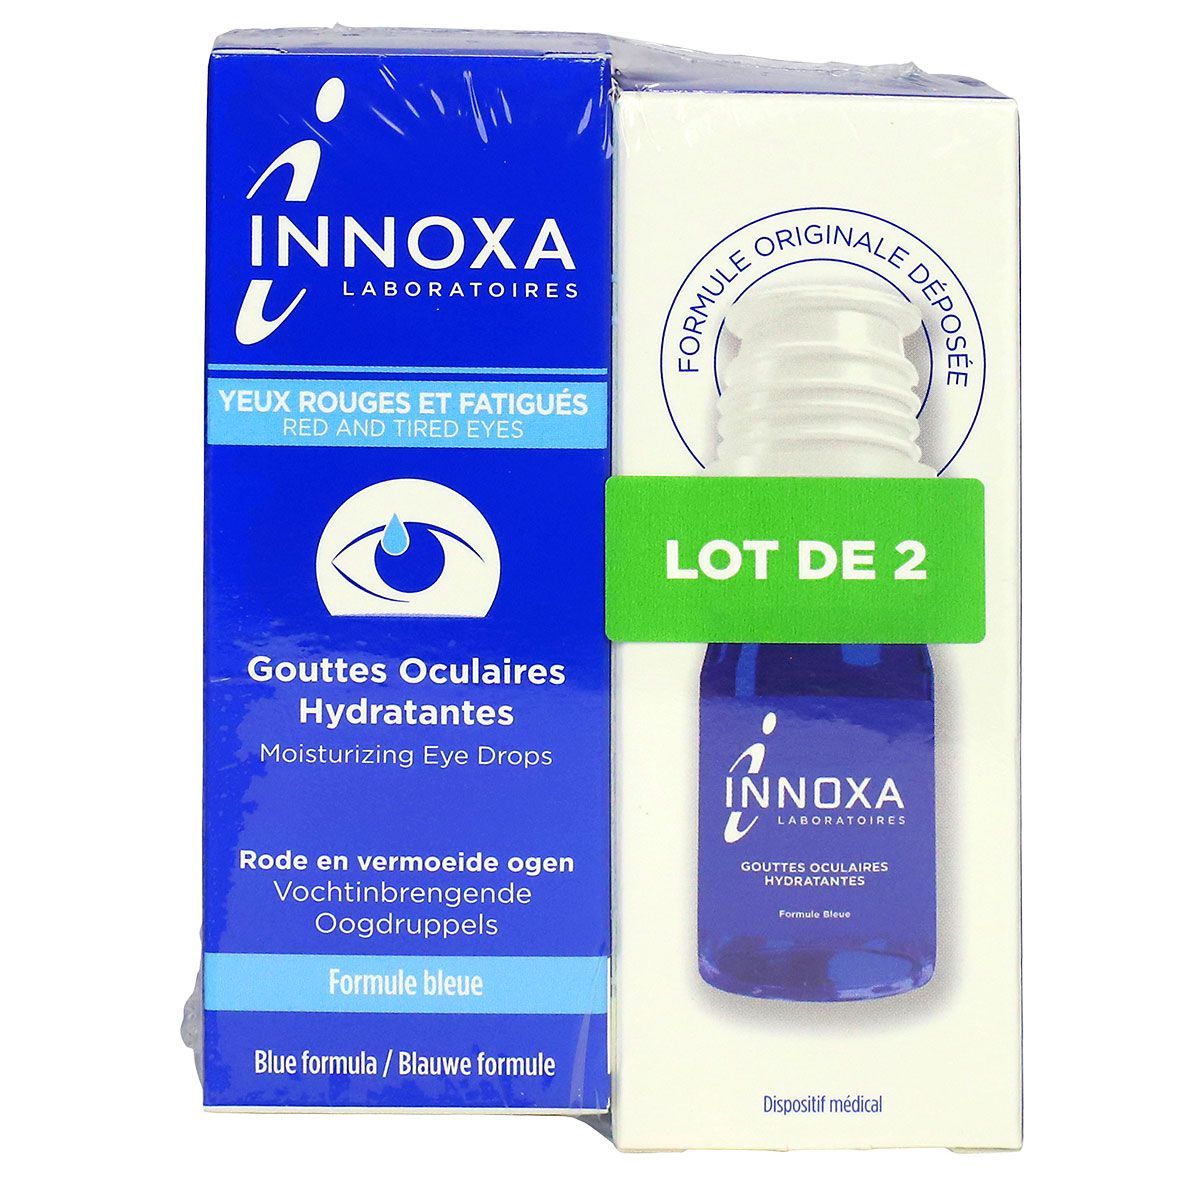 Innoxa gouttes oculaires Yeux rouges et fatigués formule bleue